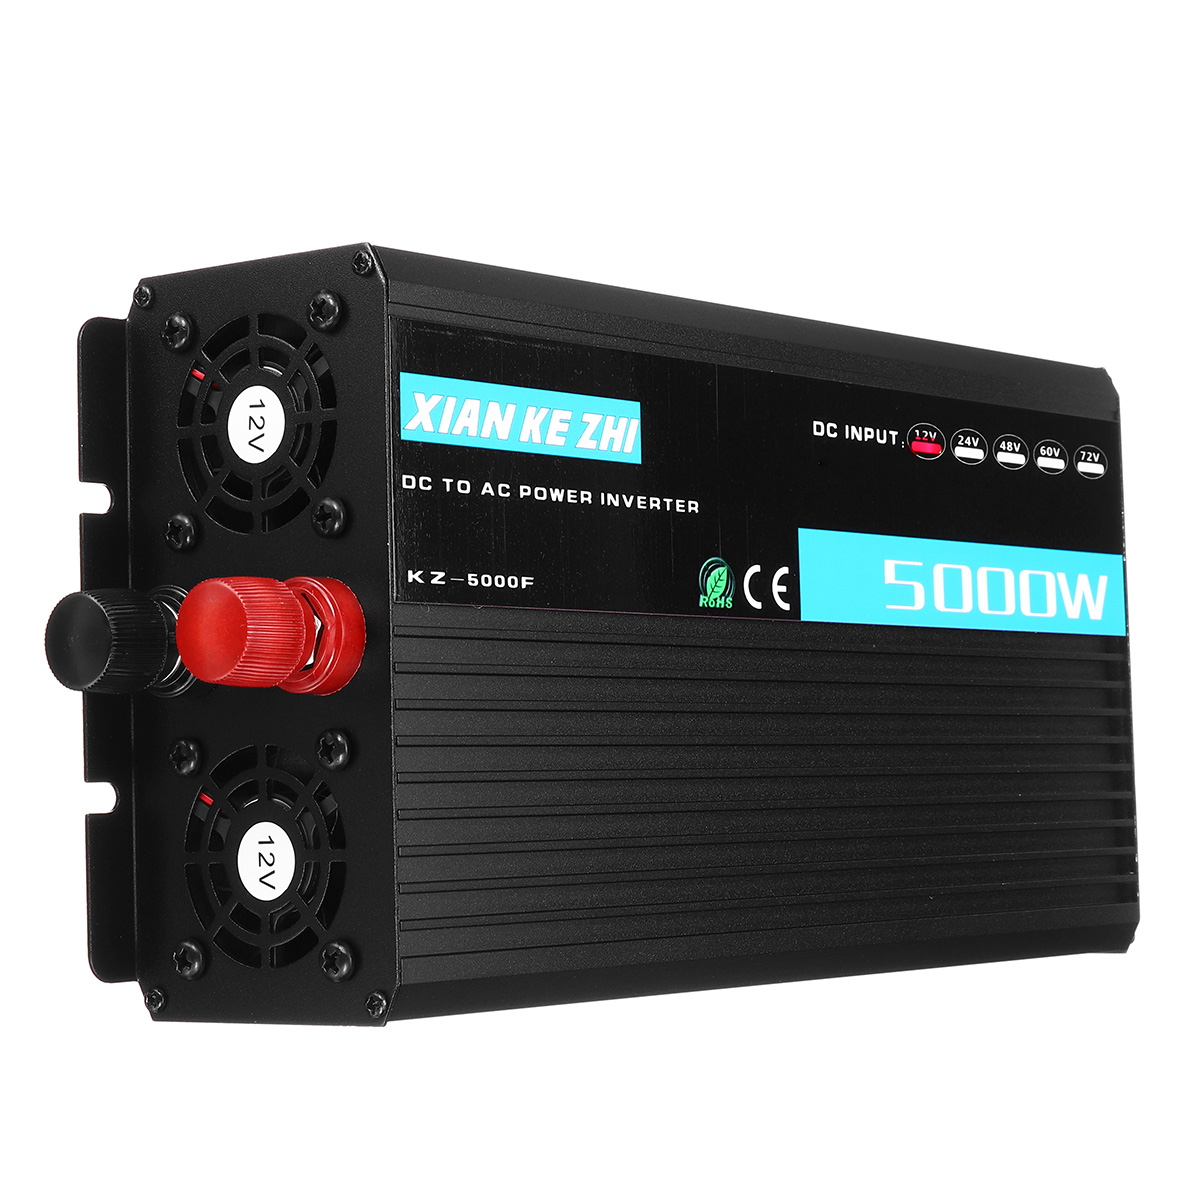 

5000W 12/24/48/60/72V TO 220V Power Inverter Modified Sine Wave Converter LED Display for Home Car